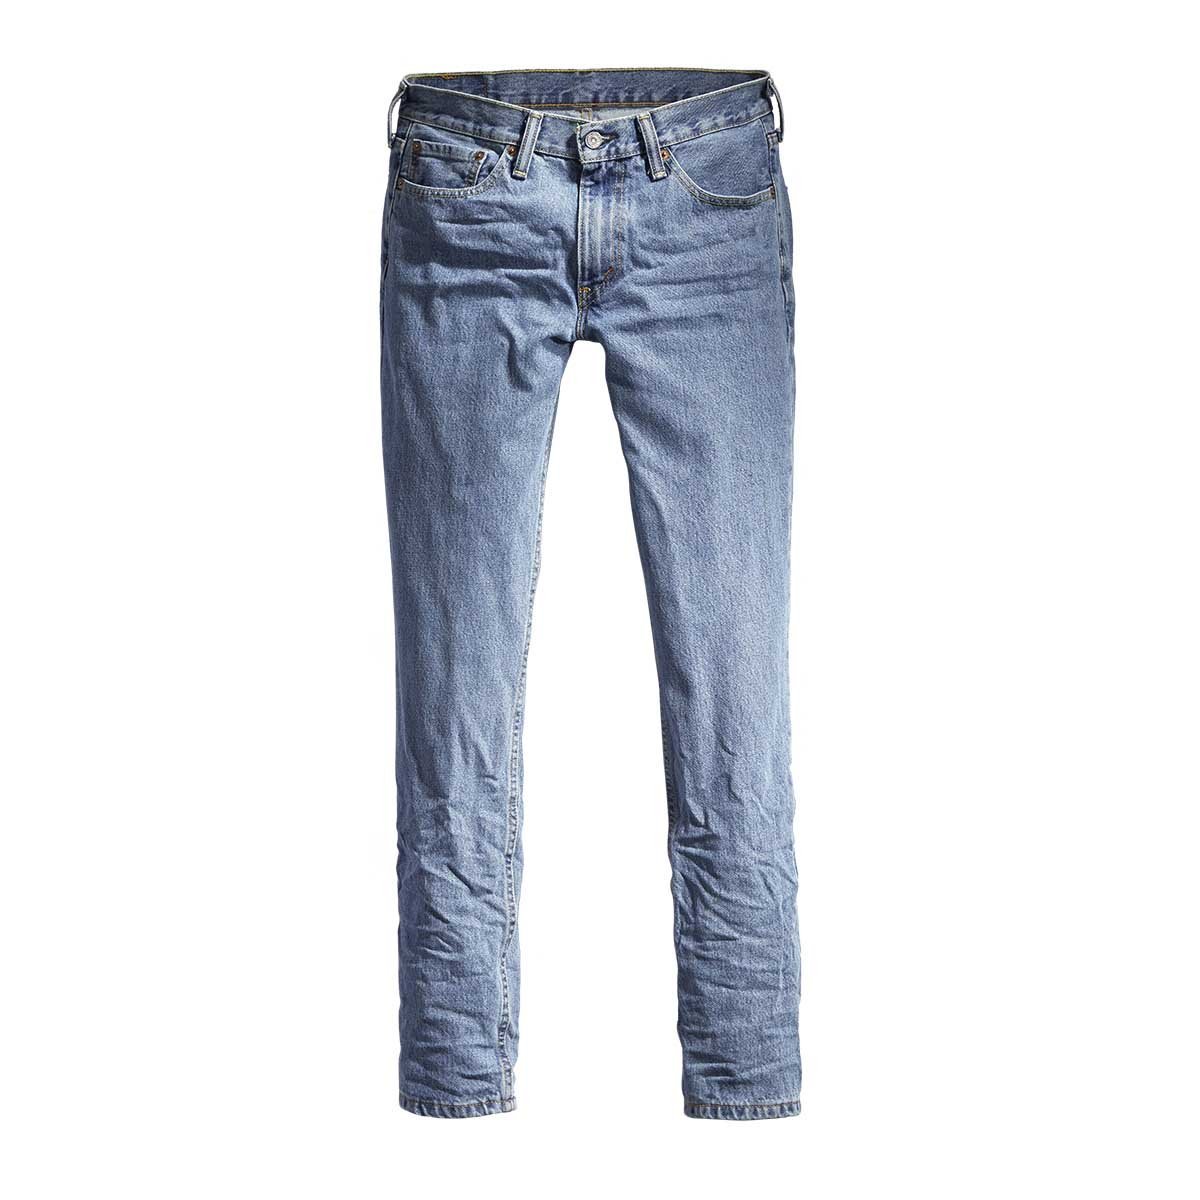 Jeans 511 Slim Fit Levis